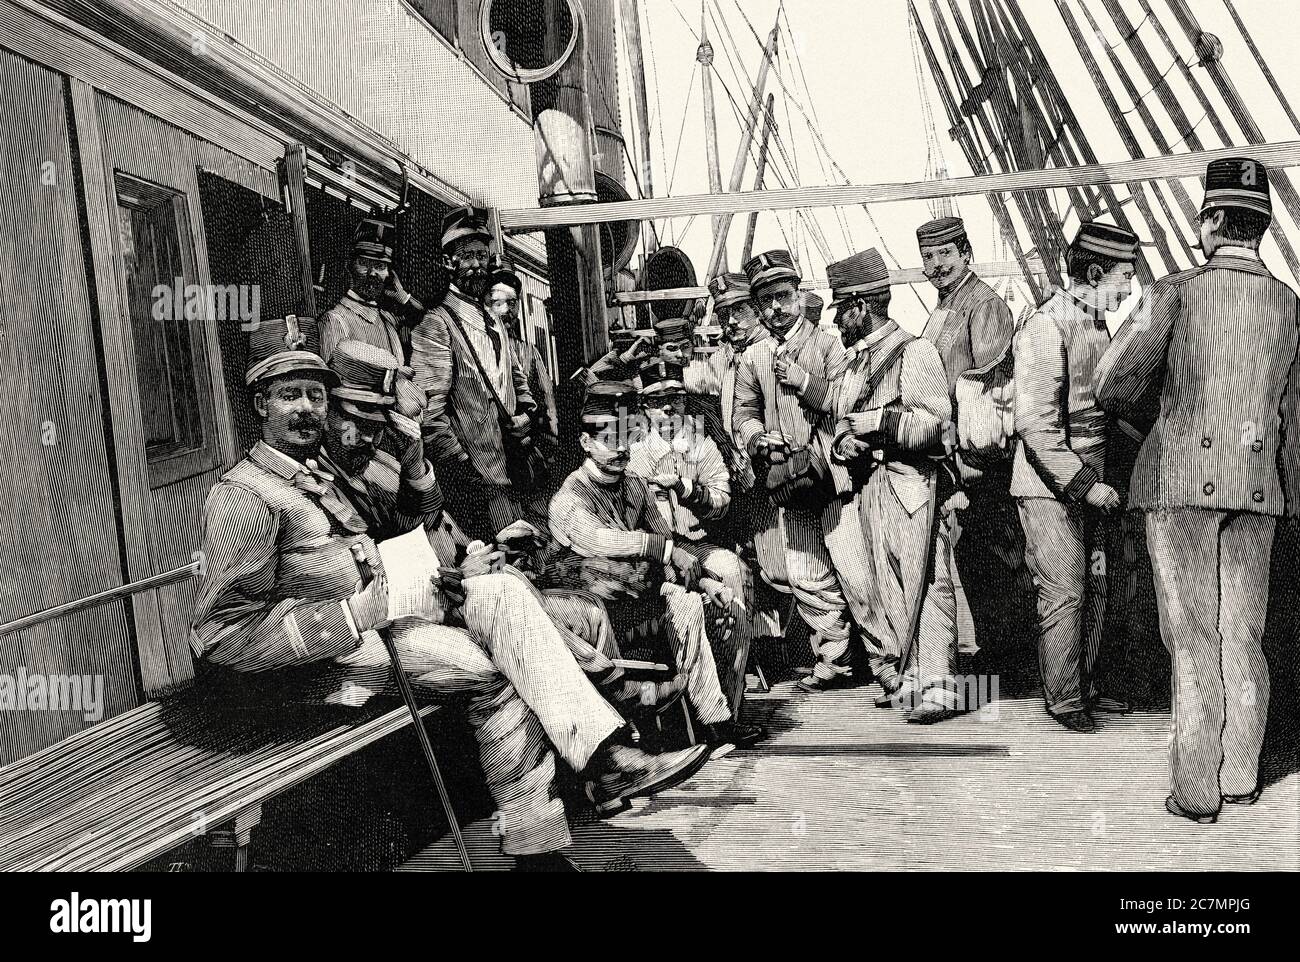 Trasporto di truppe destinate a Cuba sulla nave Columbus della compagnia transatlantica. Da la Ilustracion Española y americana 1895 Foto Stock